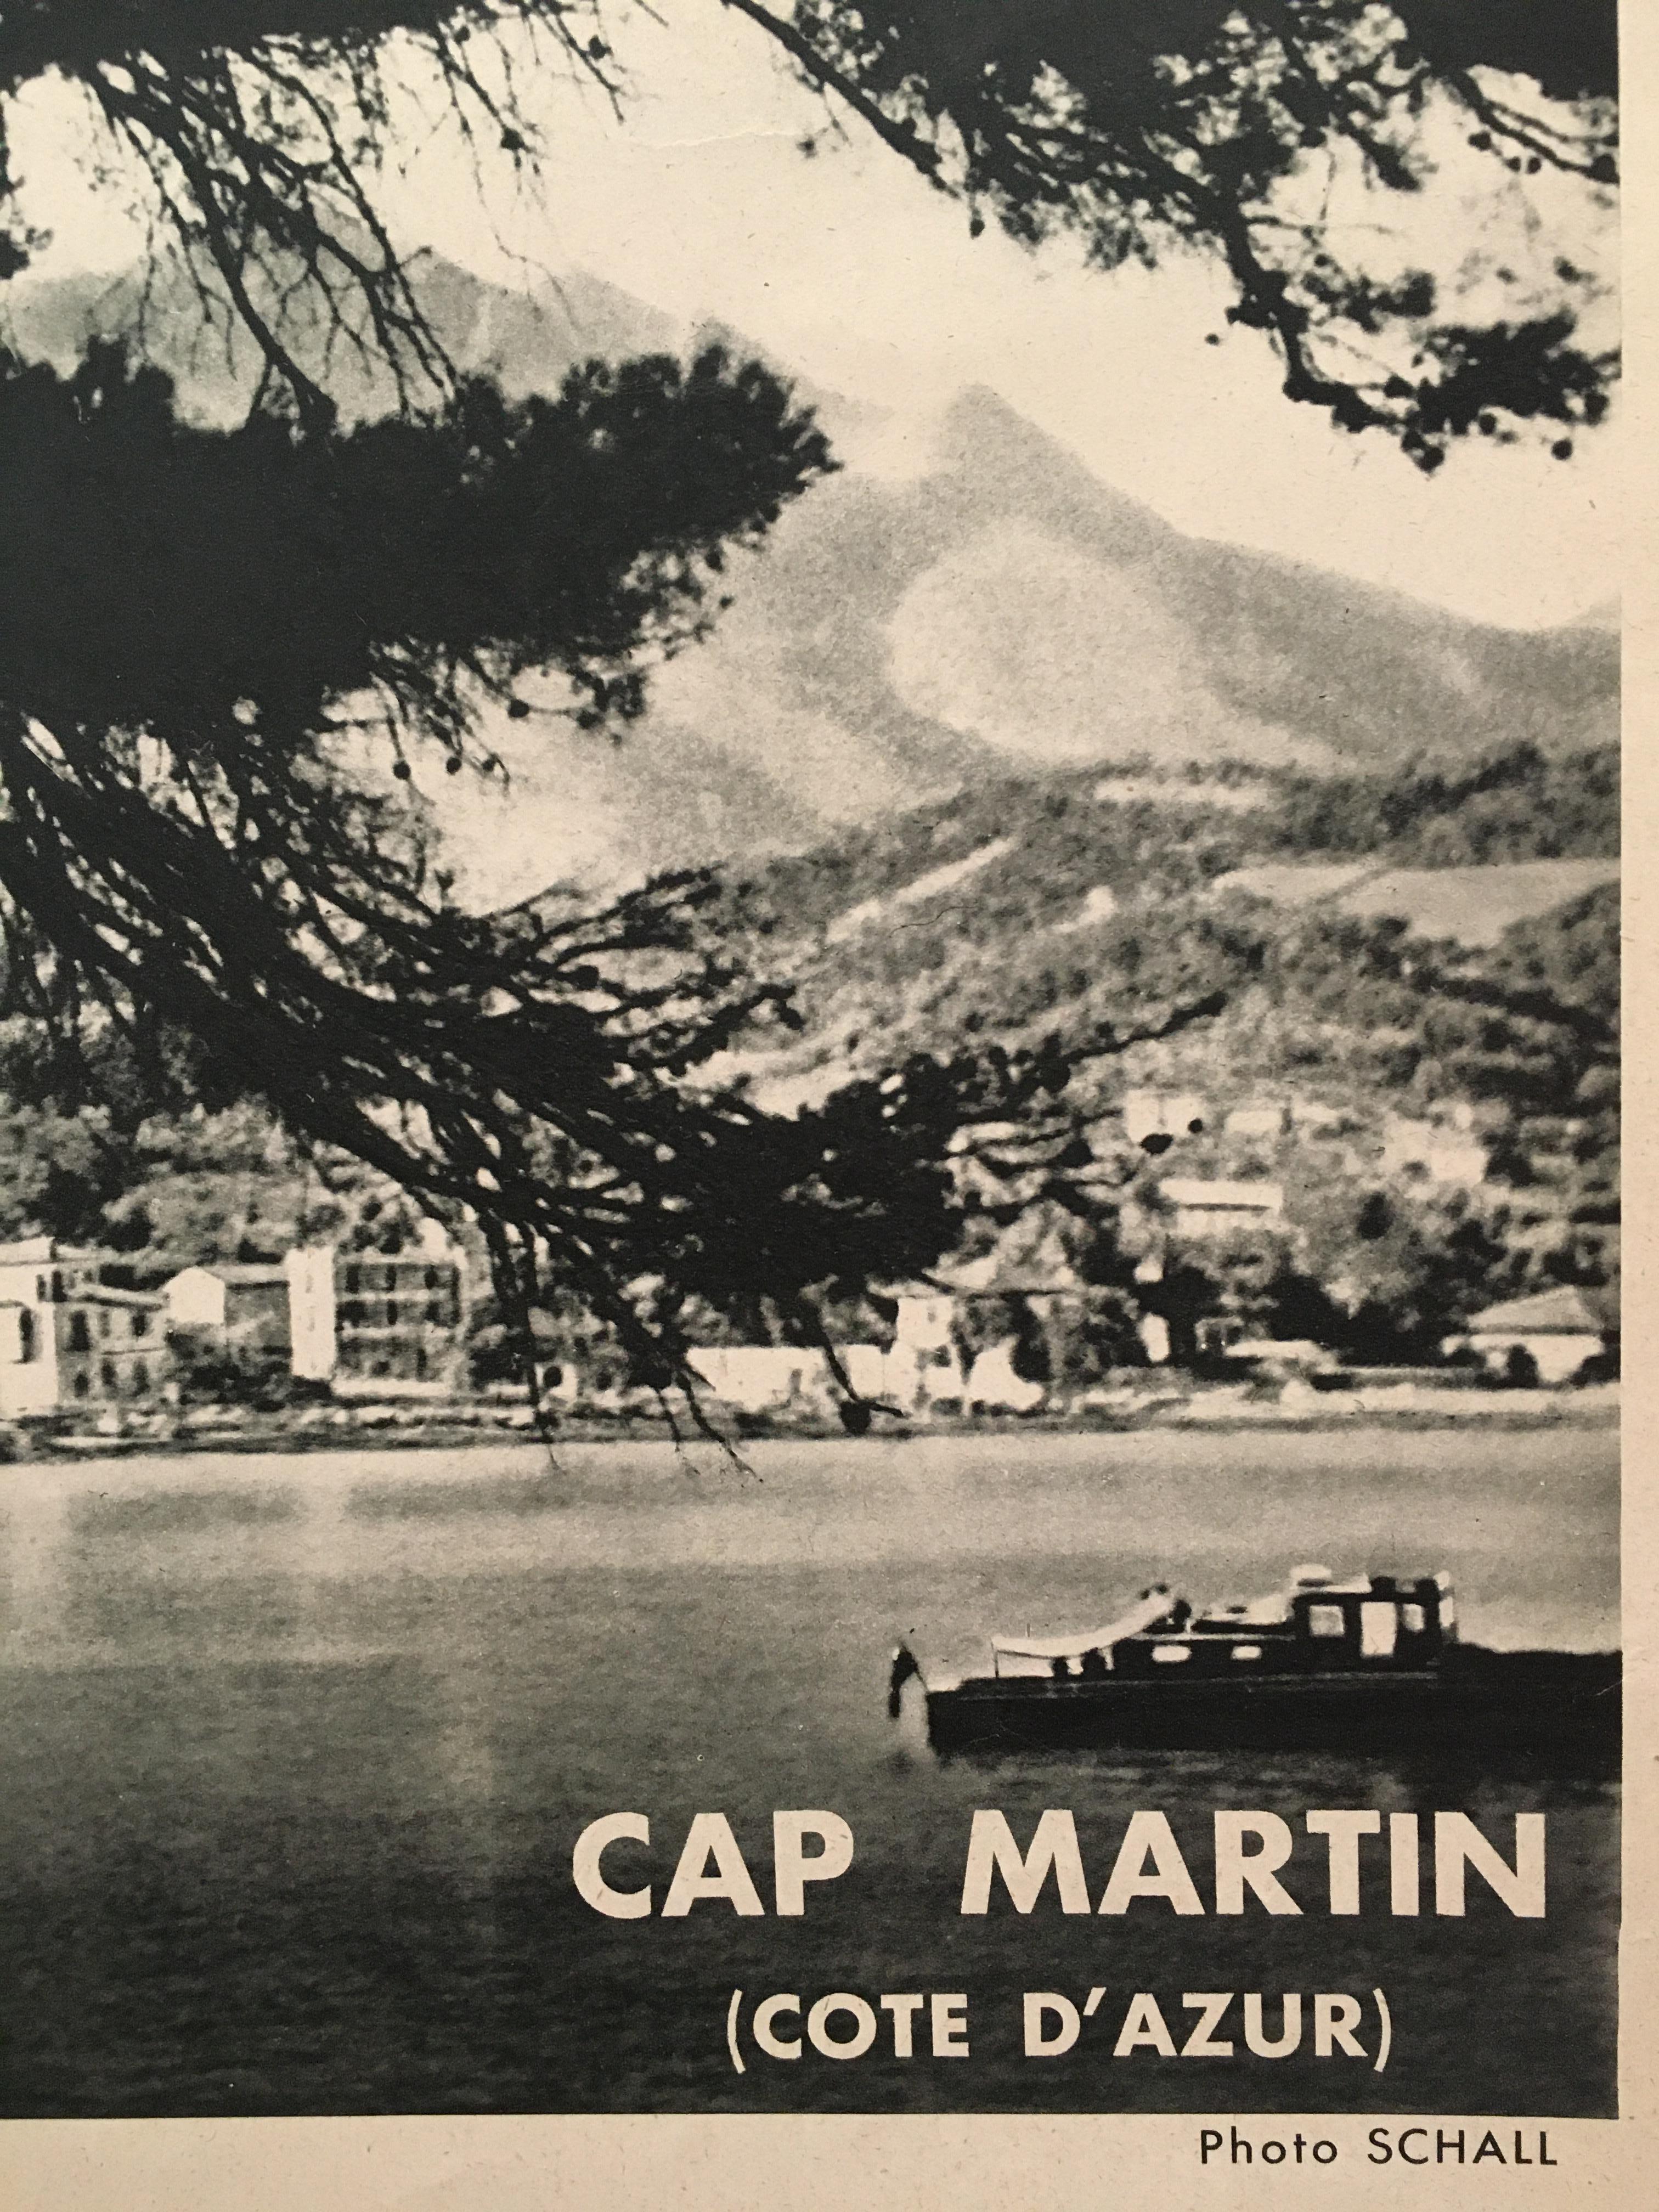 Affiche touristique originale du gouvernement français des années 1950 'Cap Martin'

Il s'agit d'une affiche touristique originale, imprimée et publiée à Paris par le gouvernement français.

Artiste 
Schall 

Année 
vers 1950

Dimensions :